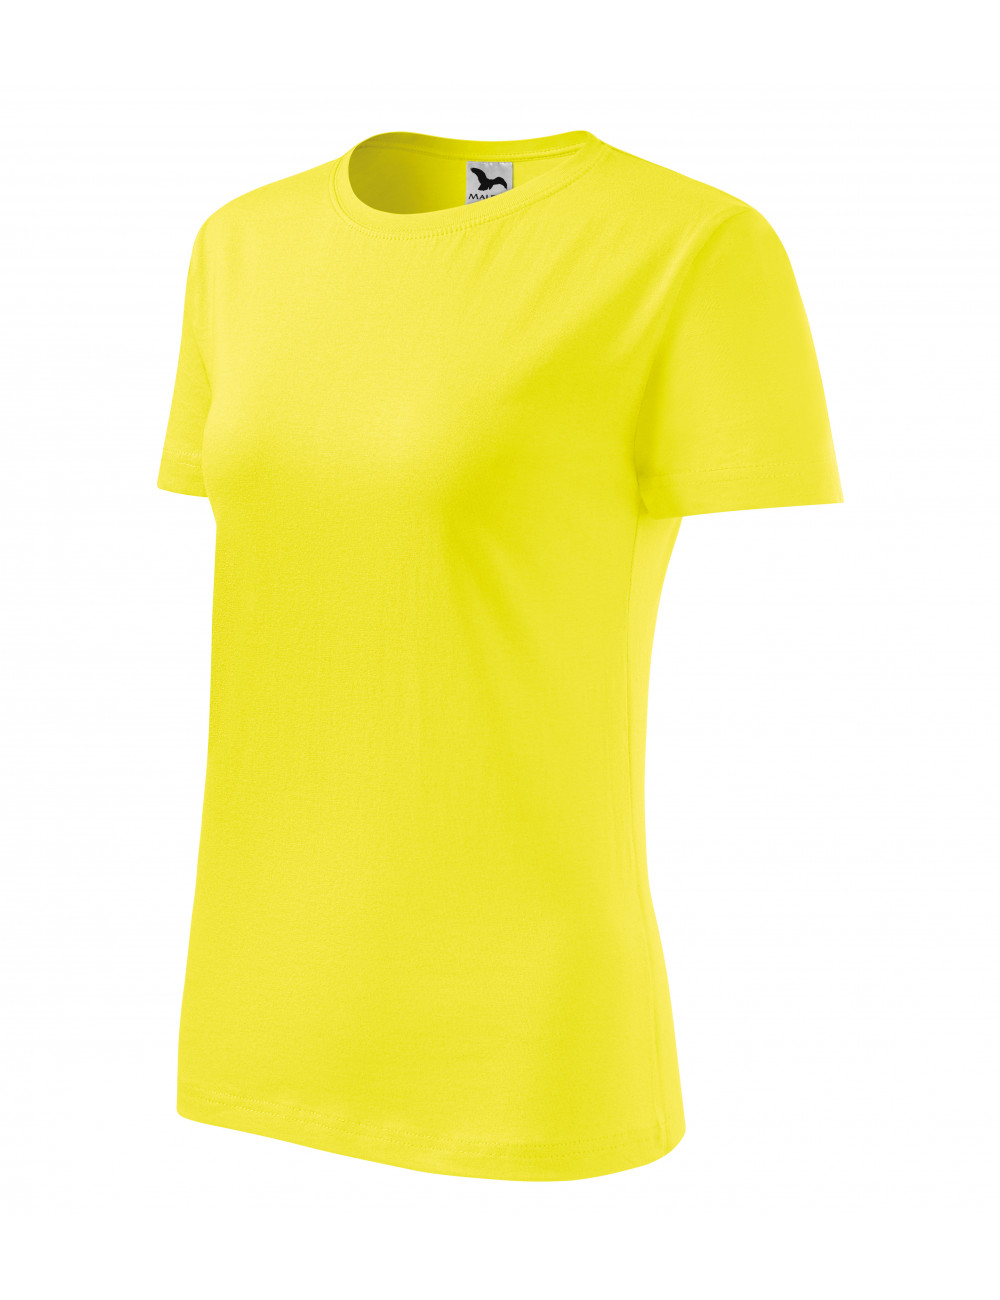 Women`s t-shirt classic new 133 lemon Adler Malfini